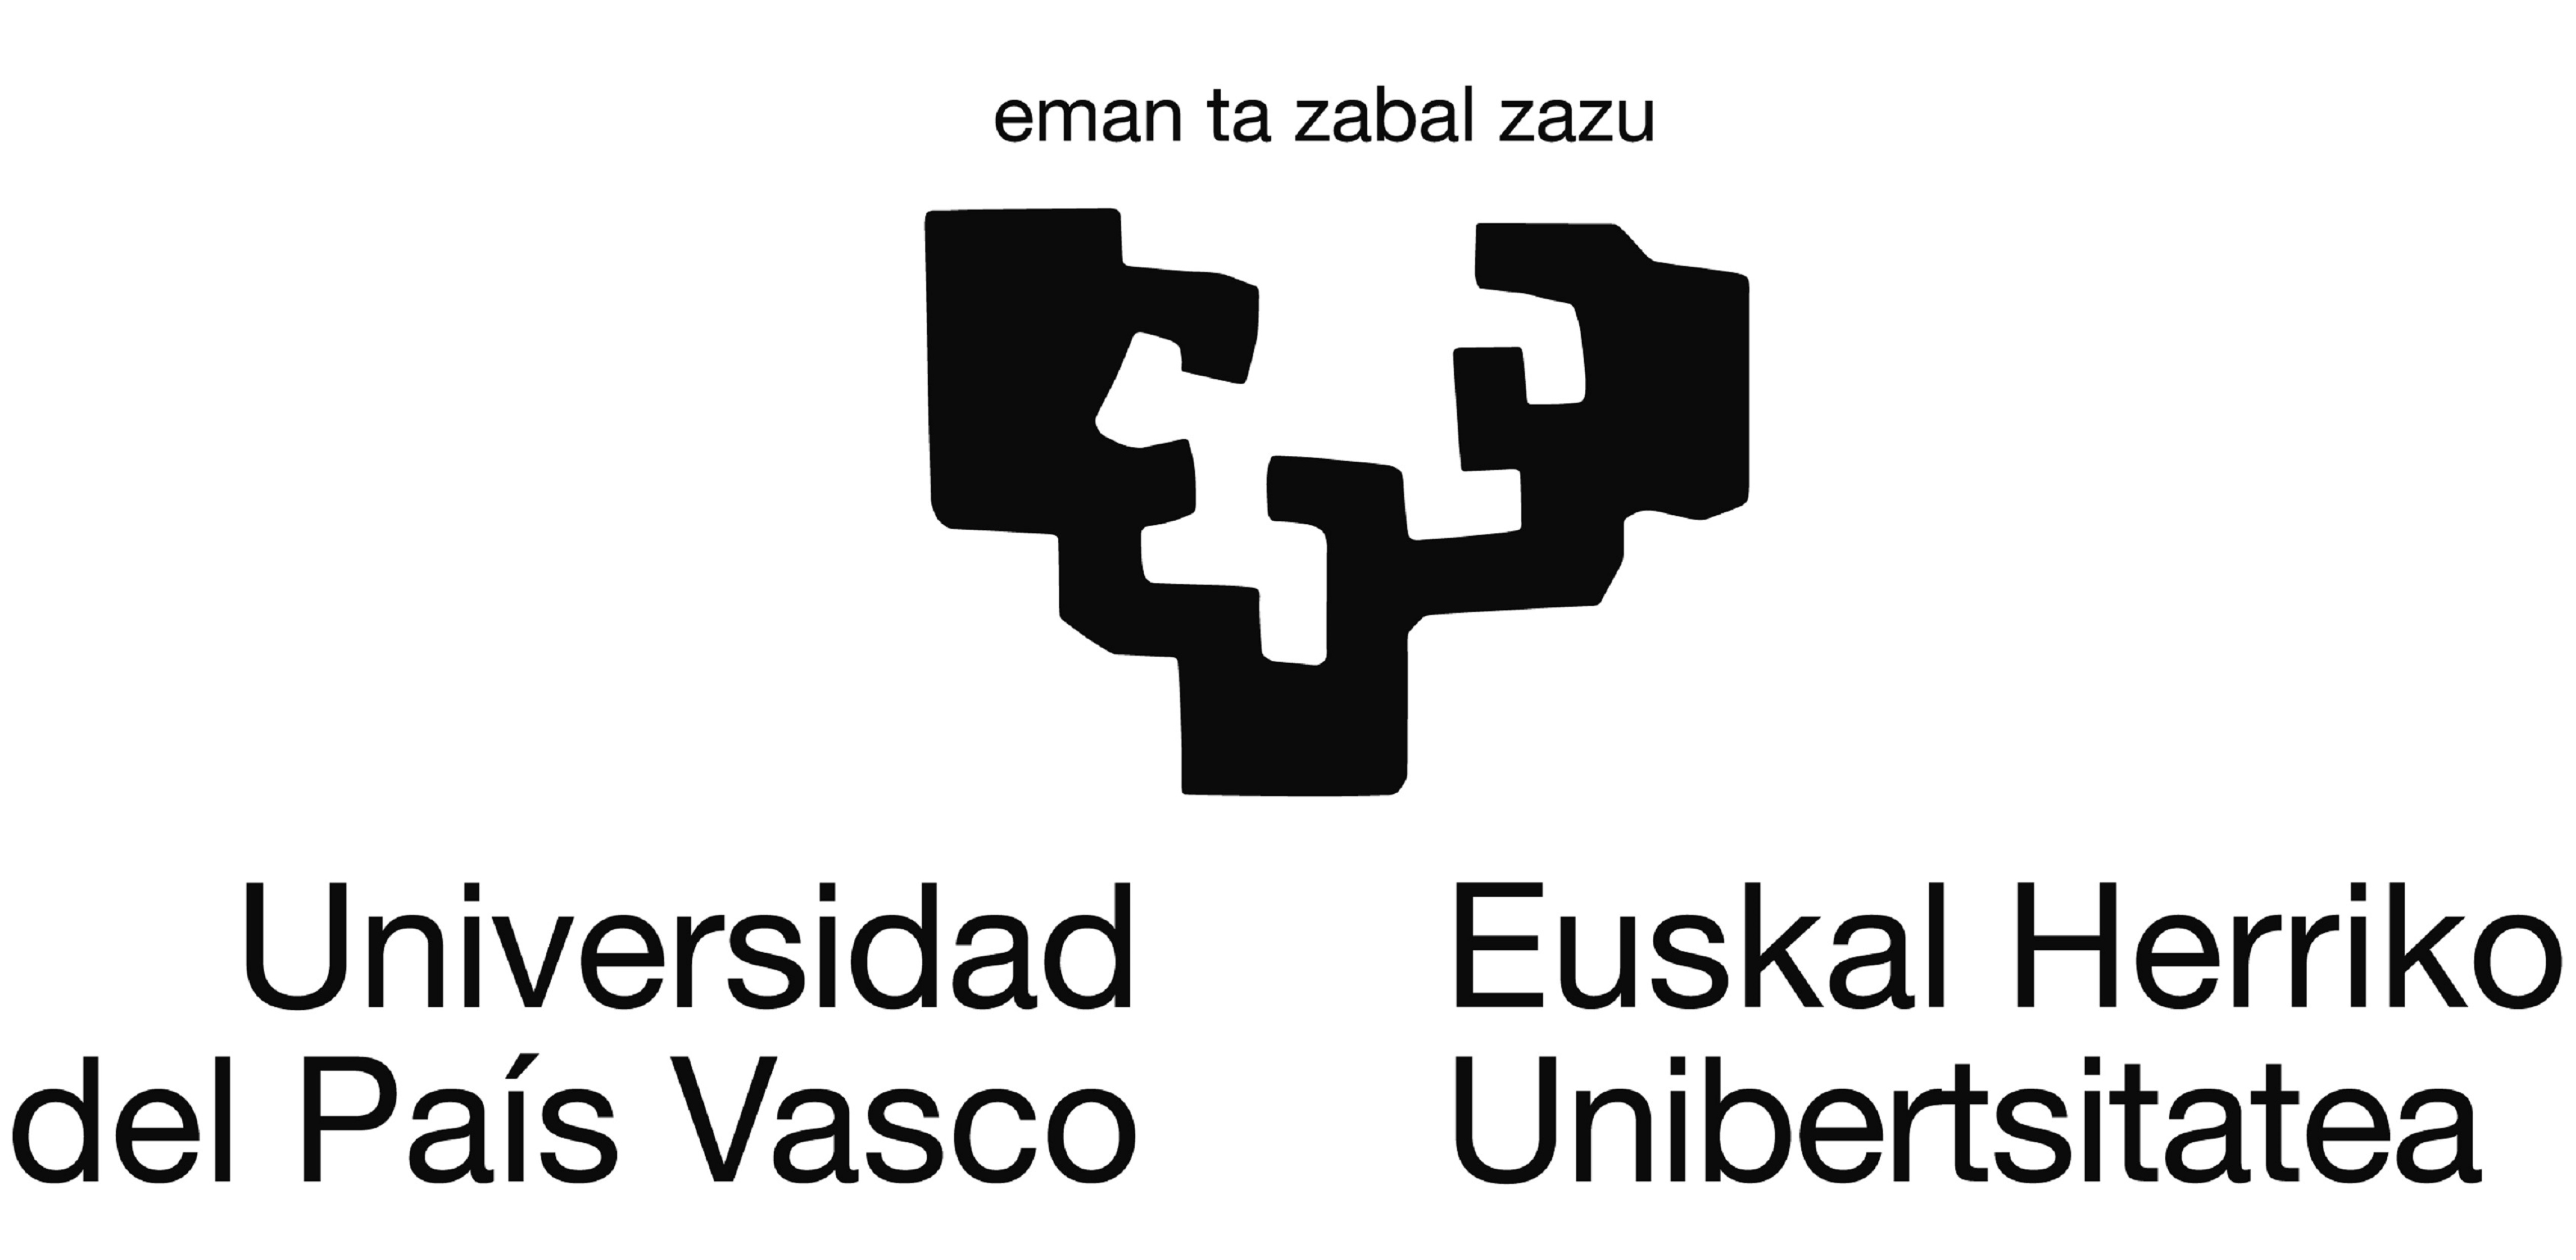 Groupe d'études historiques et comparées dans le domaine de l'éducation (GARAIAN) - Université du Pays Basque